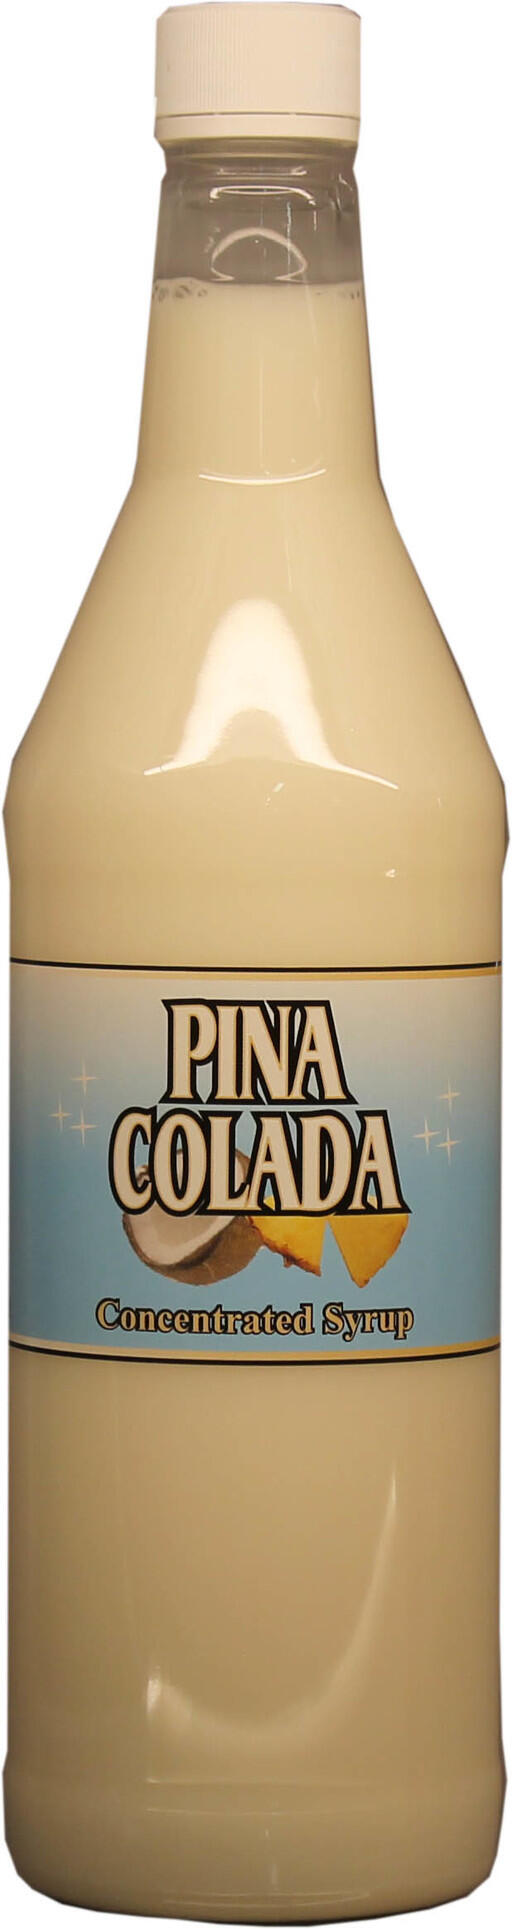 Piña colada, en av världens mest populäraste drinkar!